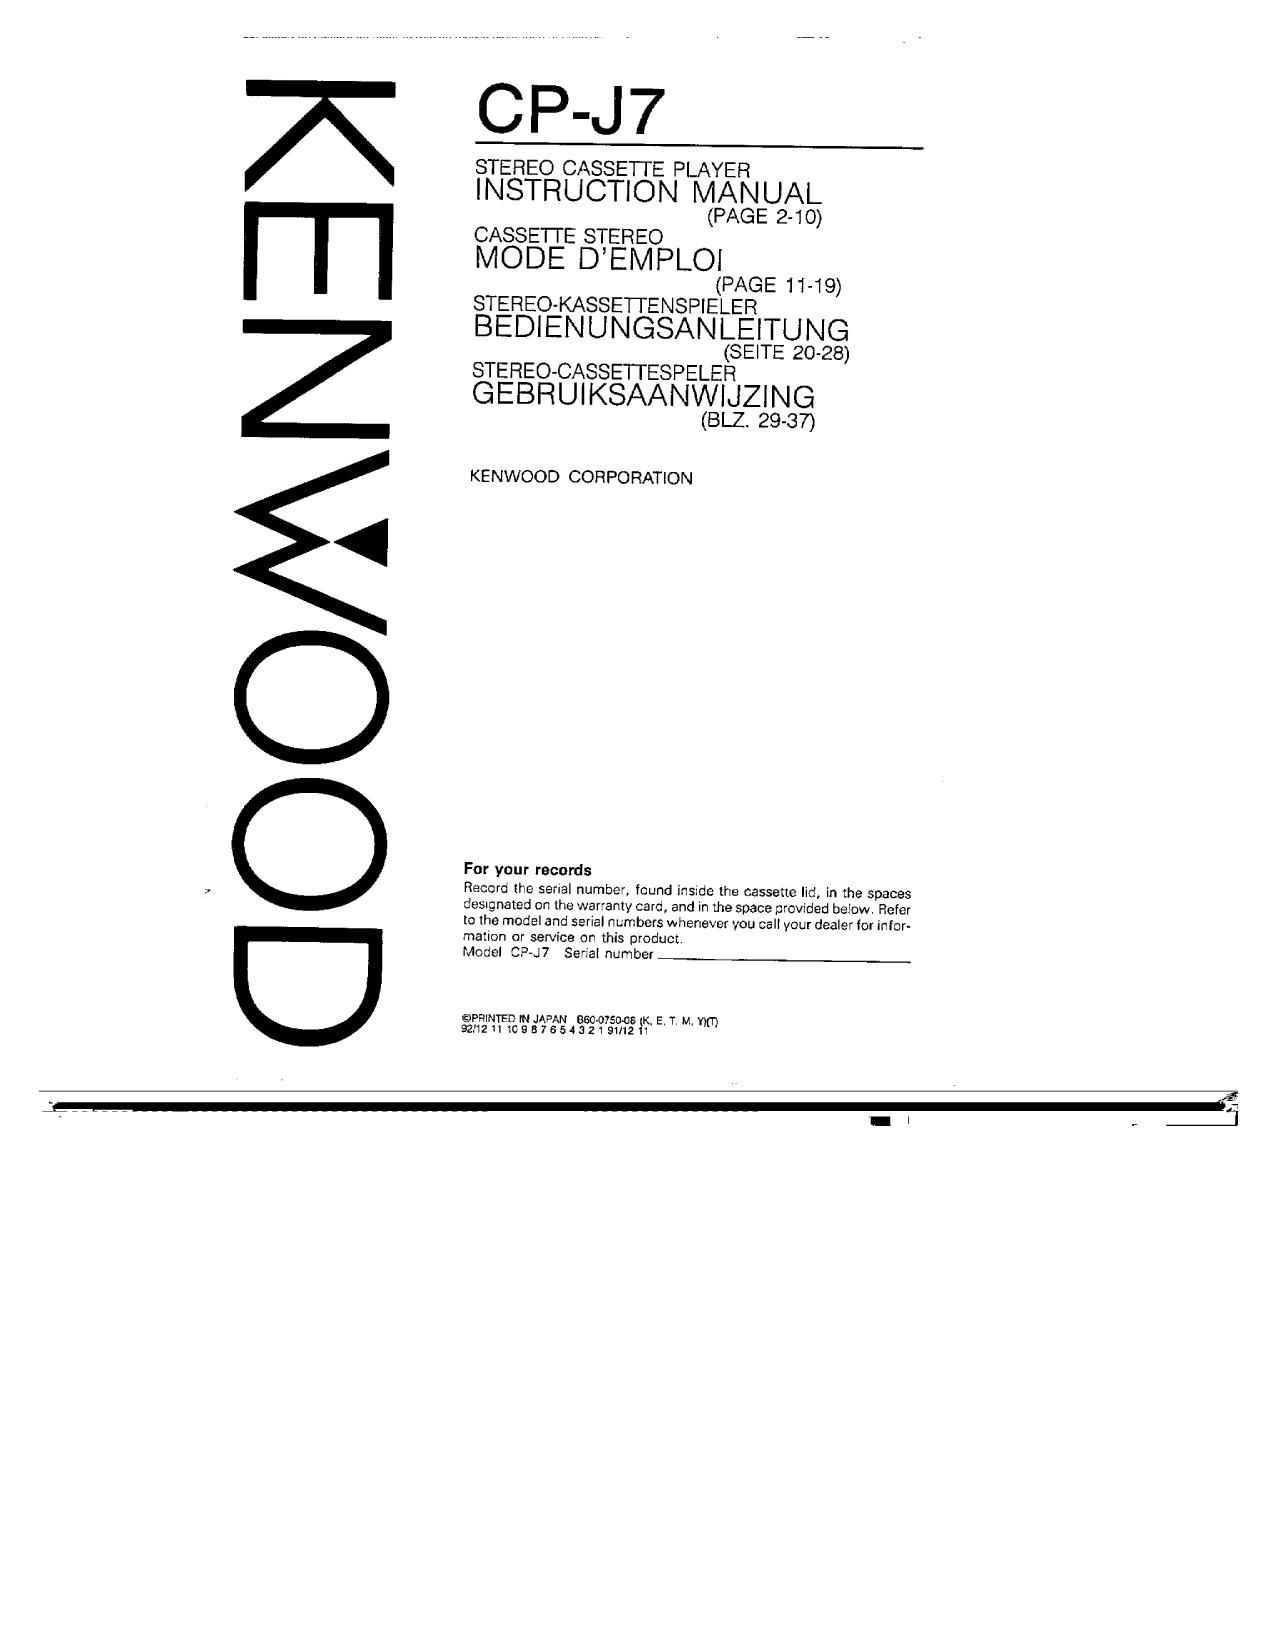 Kenwood CPJ 7 Owners Manual